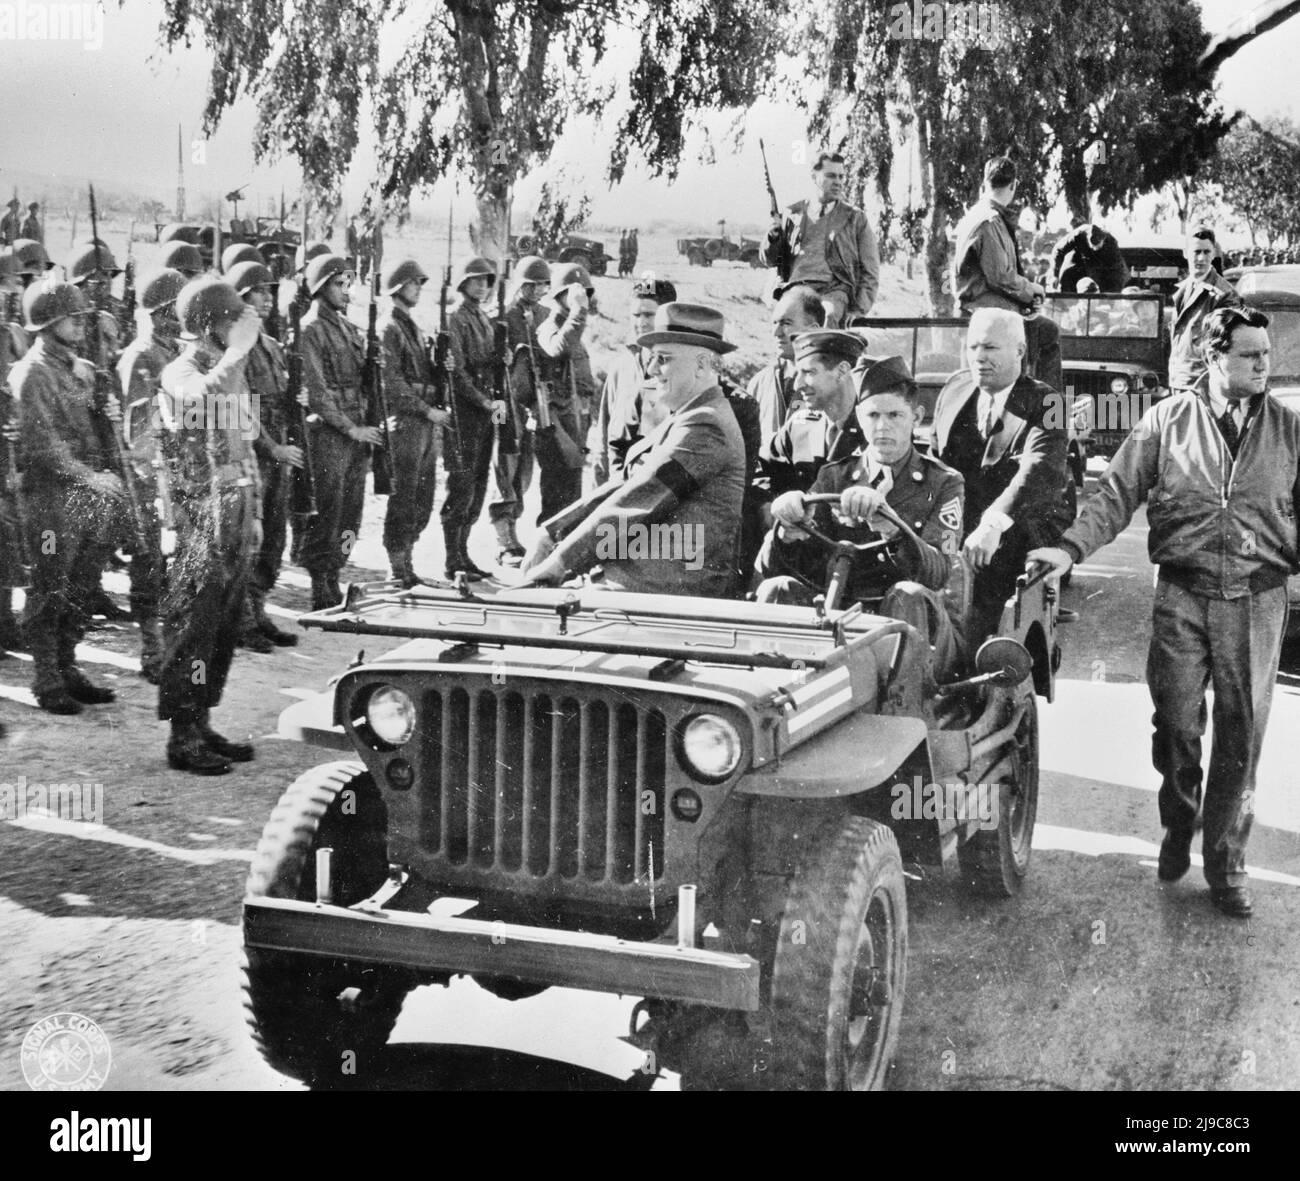 Casablanca, Marocco. Il presidente Franklin D. Roosevelt rivede le truppe americane. Il sergente Oran Lass di Kansas City, Missouri, guida la jeep - Gennaio 1943 Foto Stock